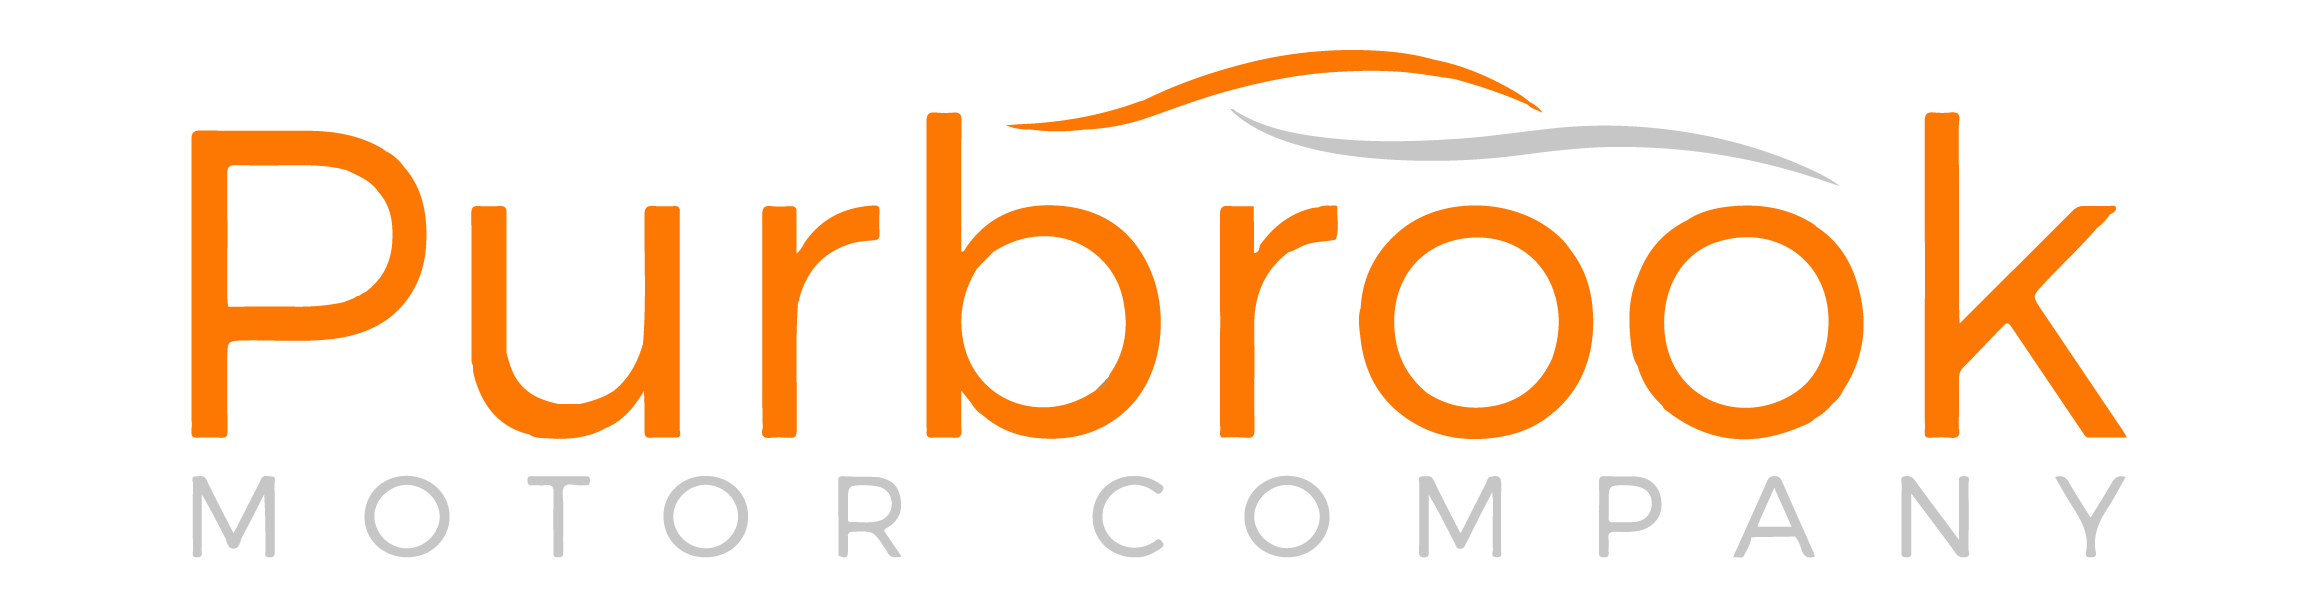 Purbrook Motor Company logo